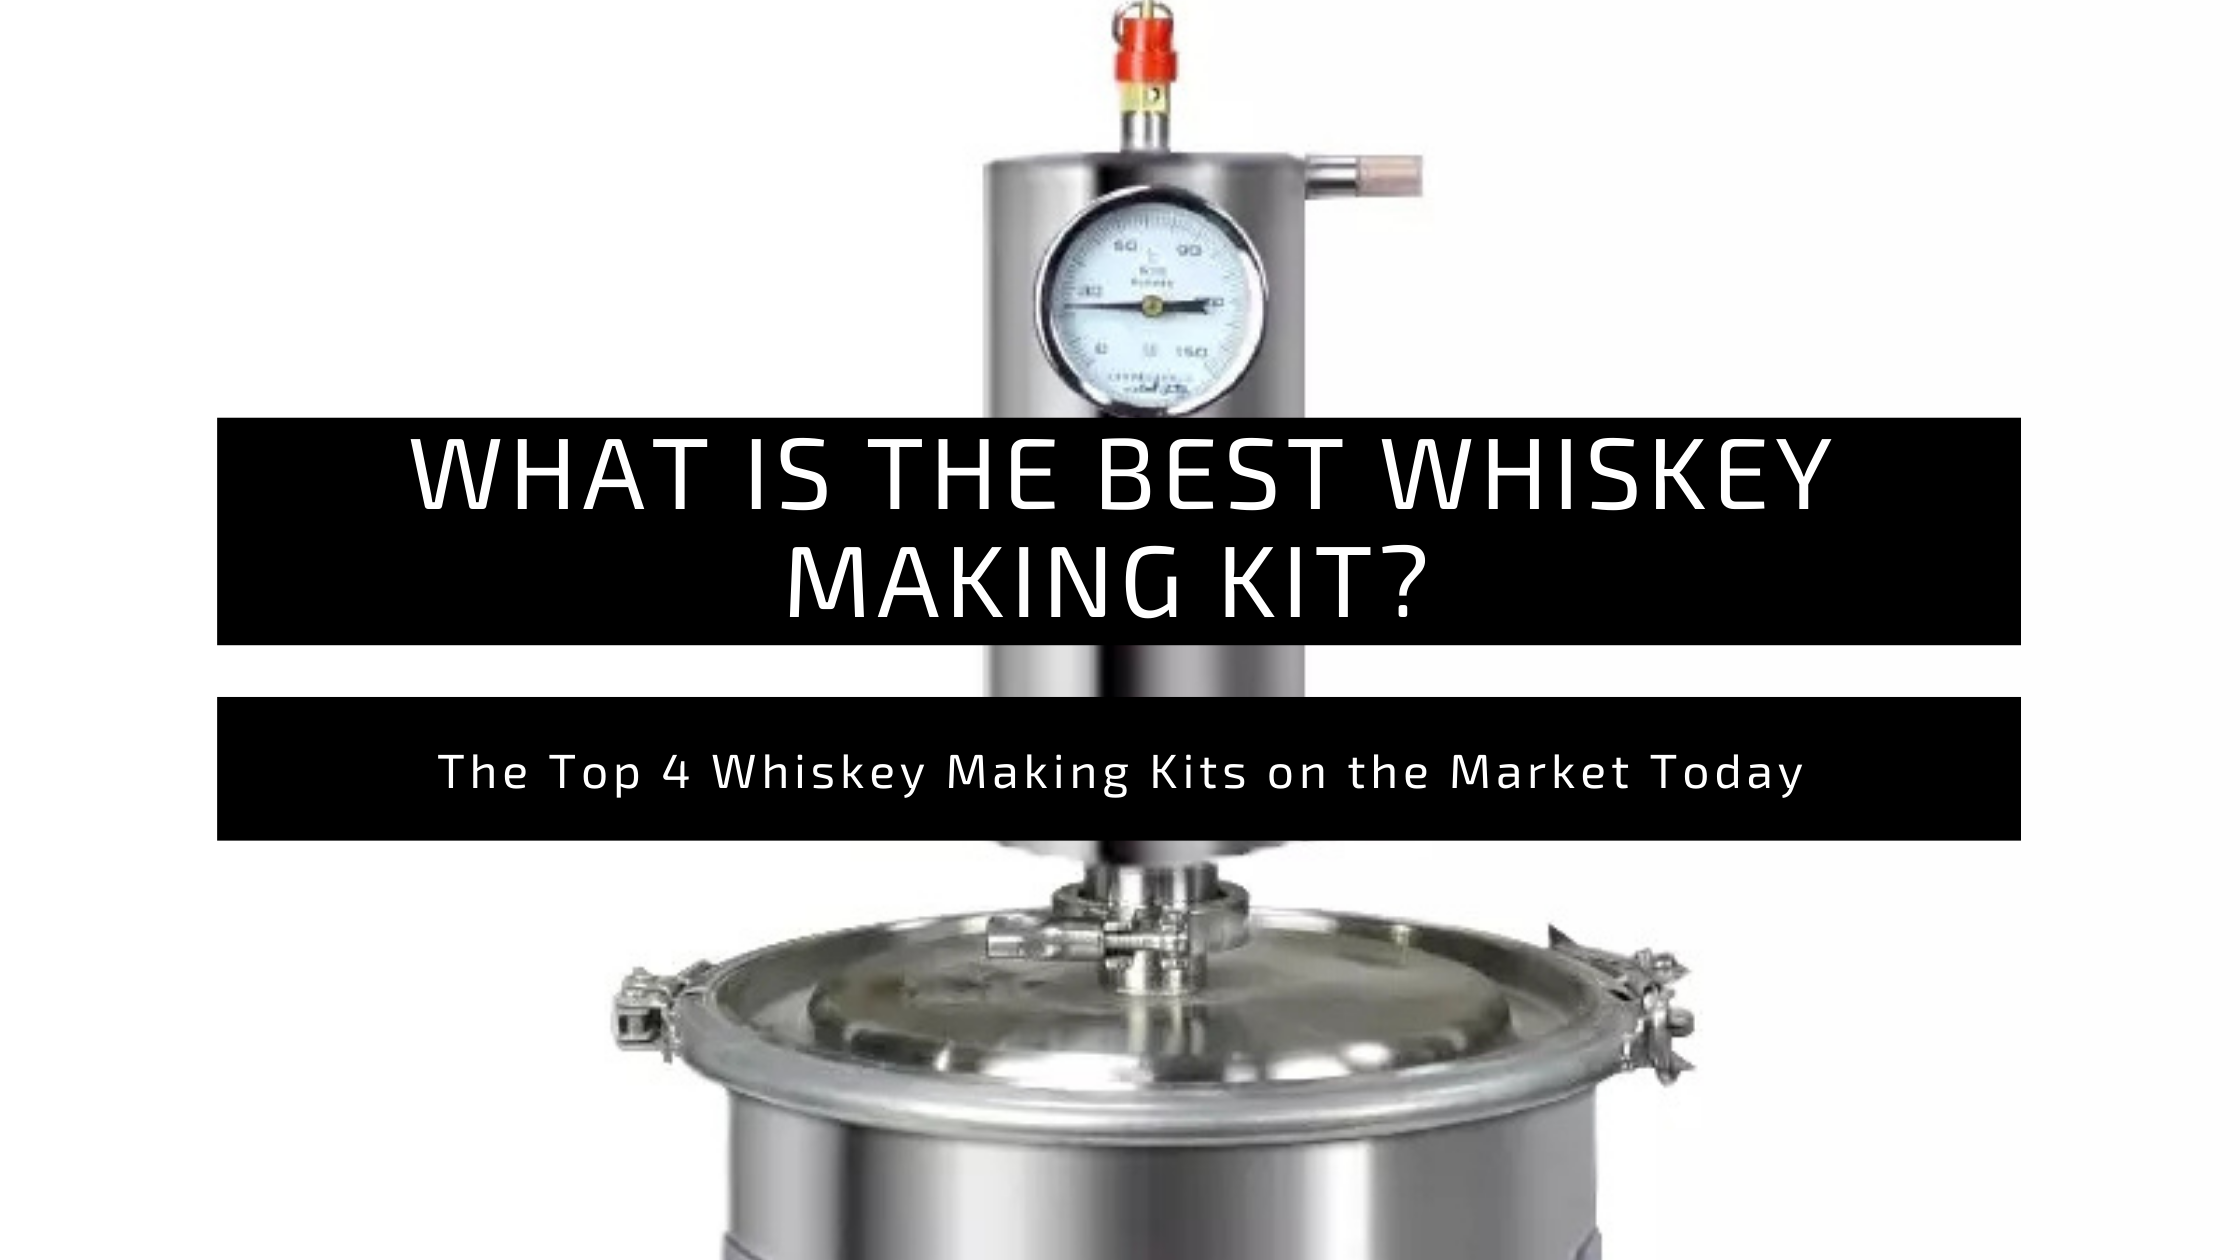 Whiskey Making Kit